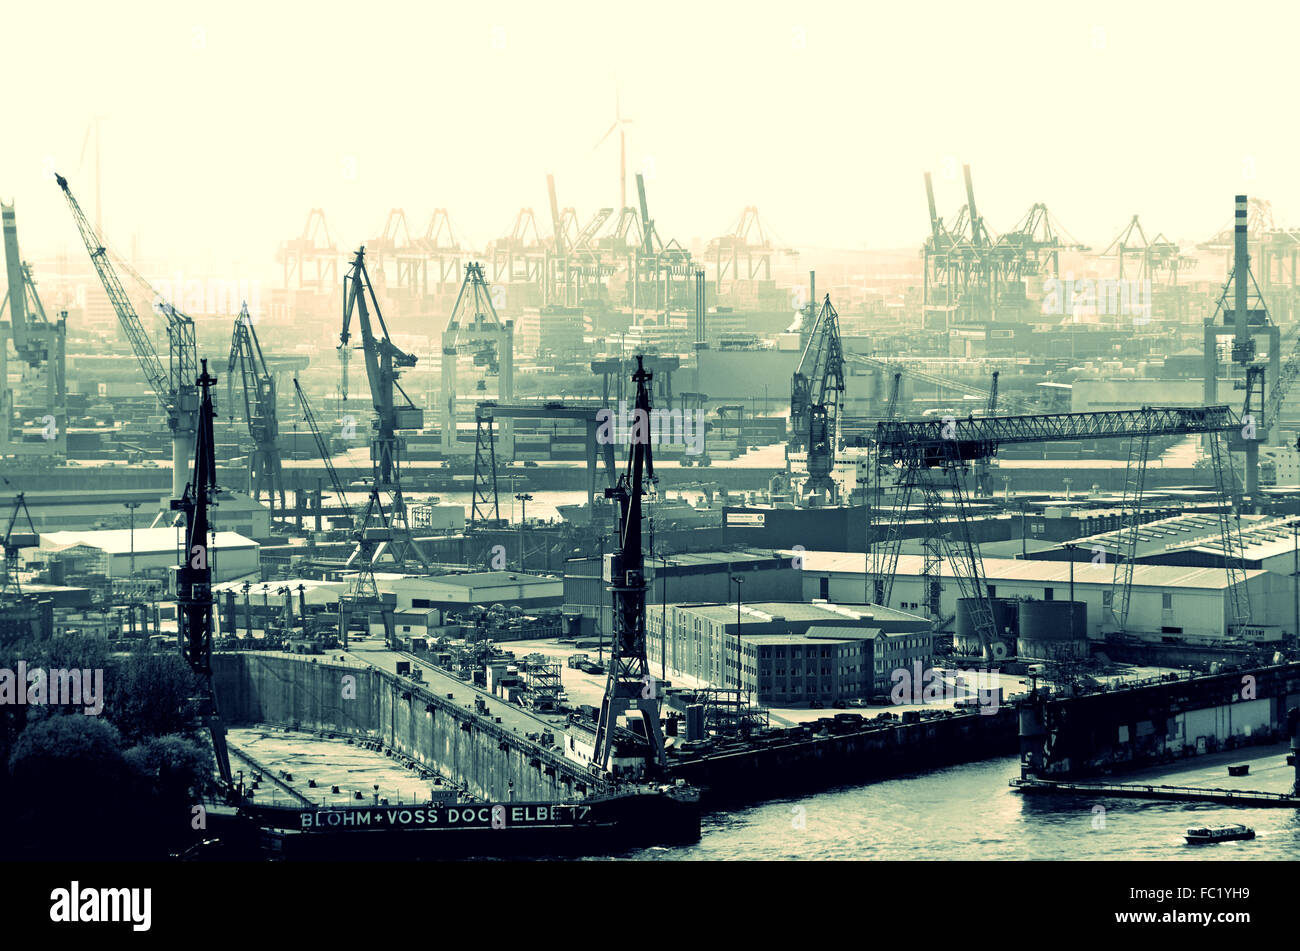 Hafen Hamburg mit Bohm und Voss Foto de stock